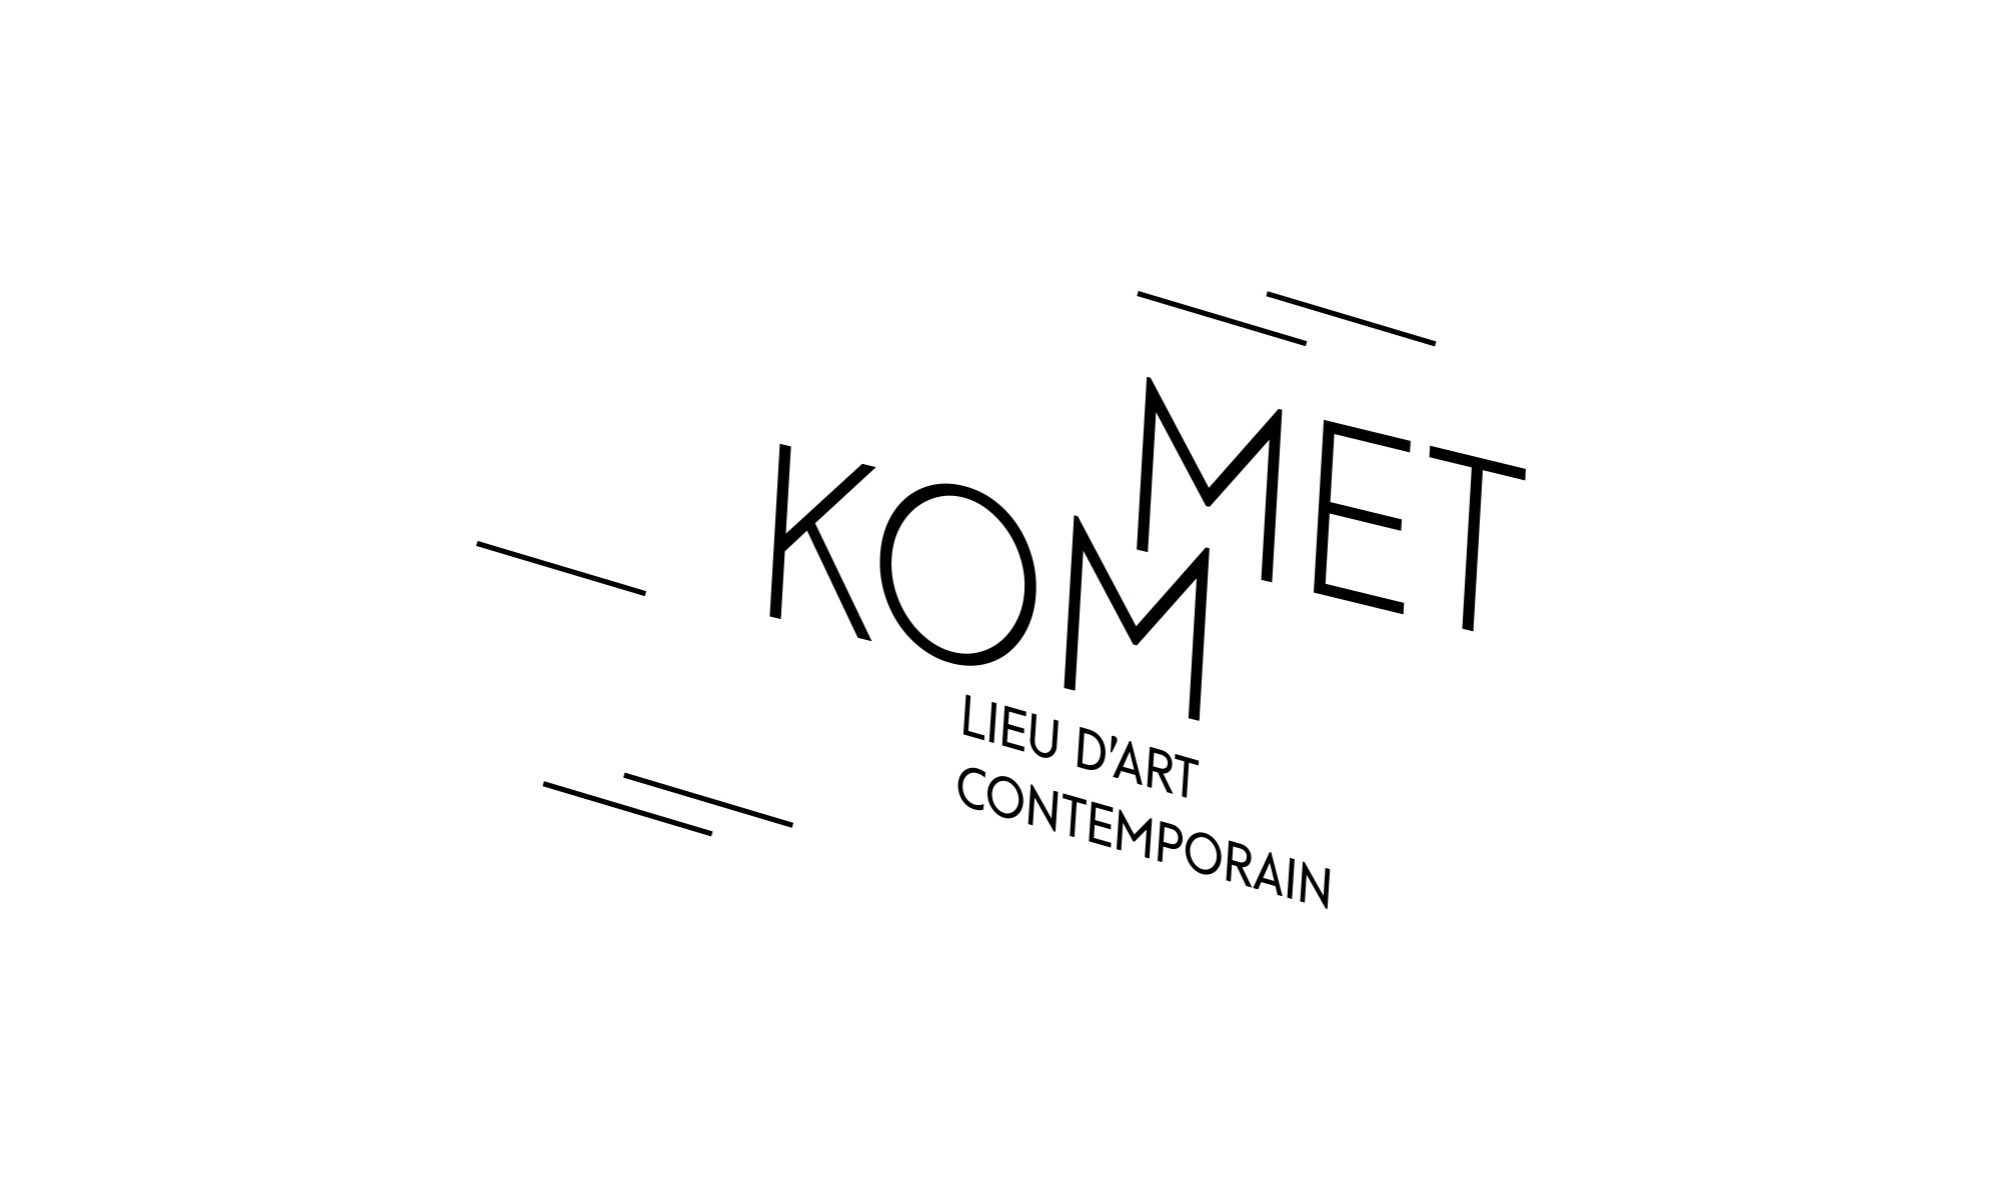 KOMMET - Lieu d'art contemporain